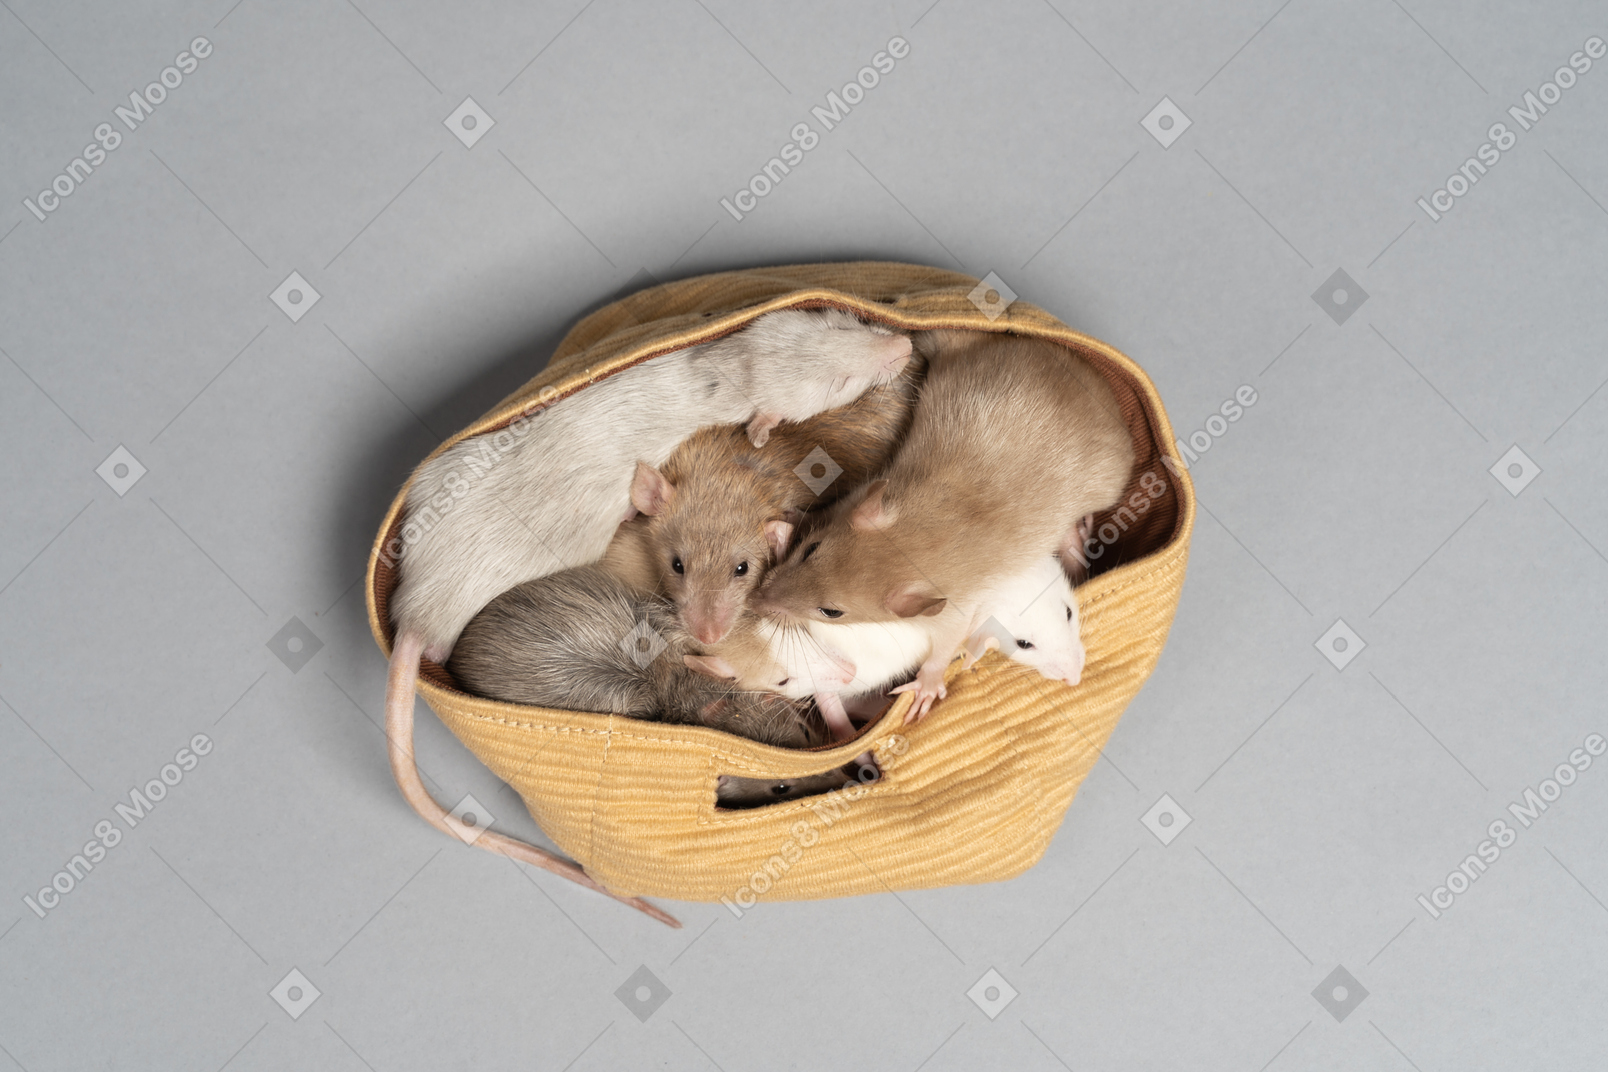 Diversi topi seduti in una borsa di stoffa gialla